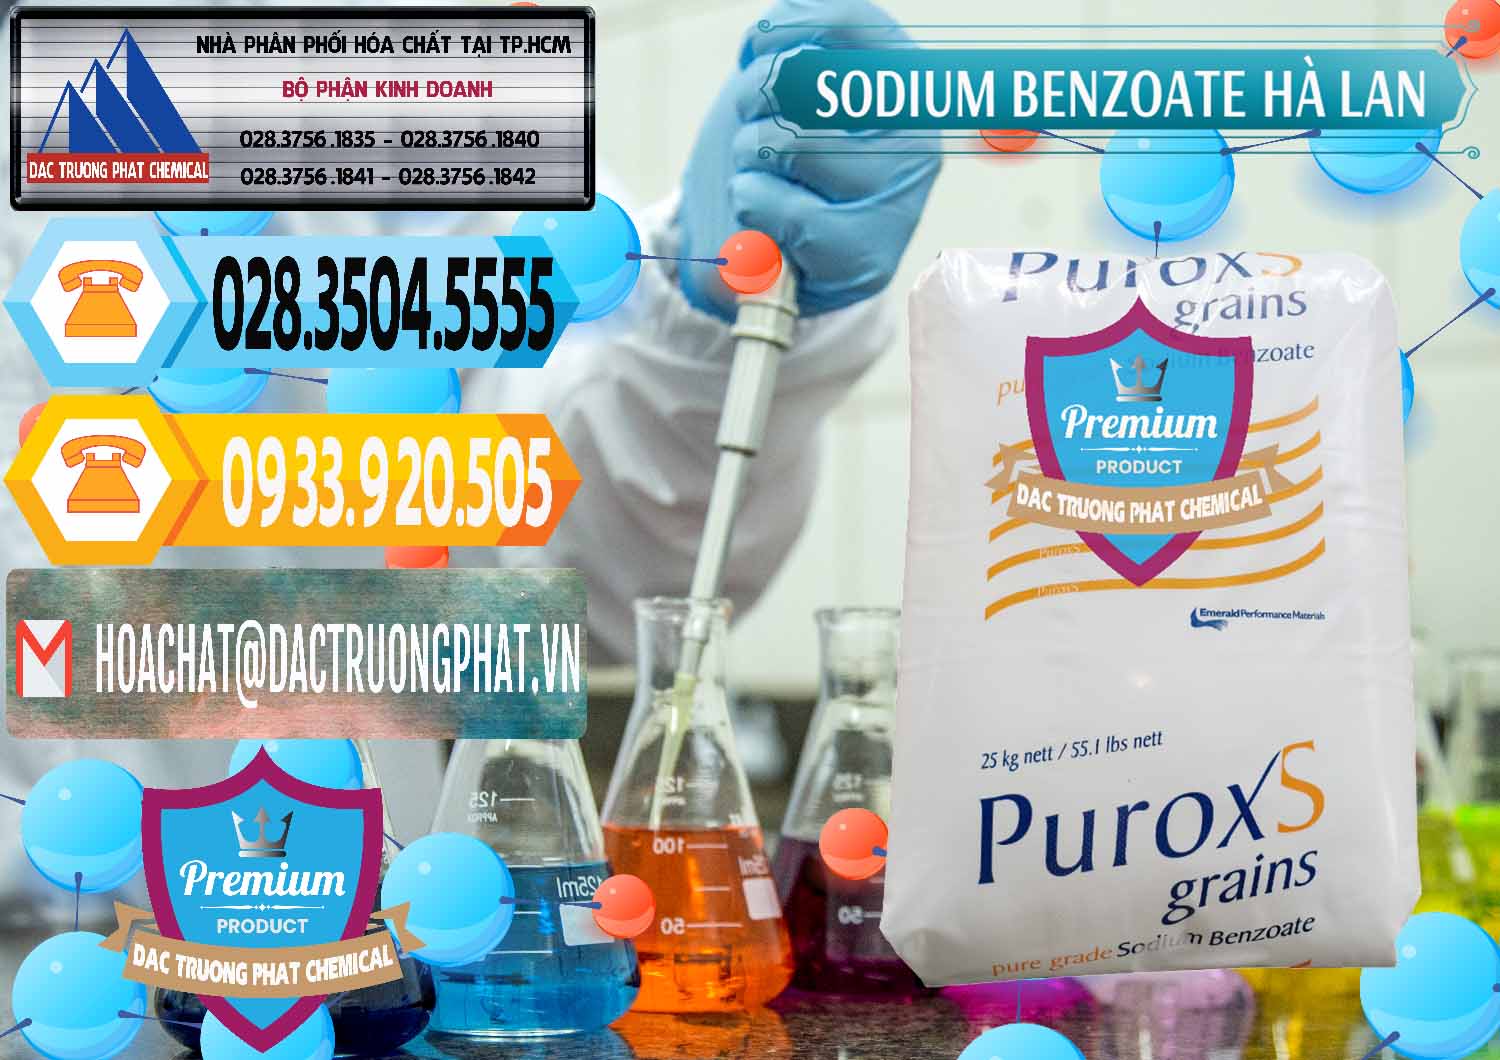 Bán & cung ứng Sodium Benzoate - Mốc Bột Puroxs Hà Lan Netherlands - 0467 - Chuyên kinh doanh - phân phối hóa chất tại TP.HCM - hoachattayrua.net